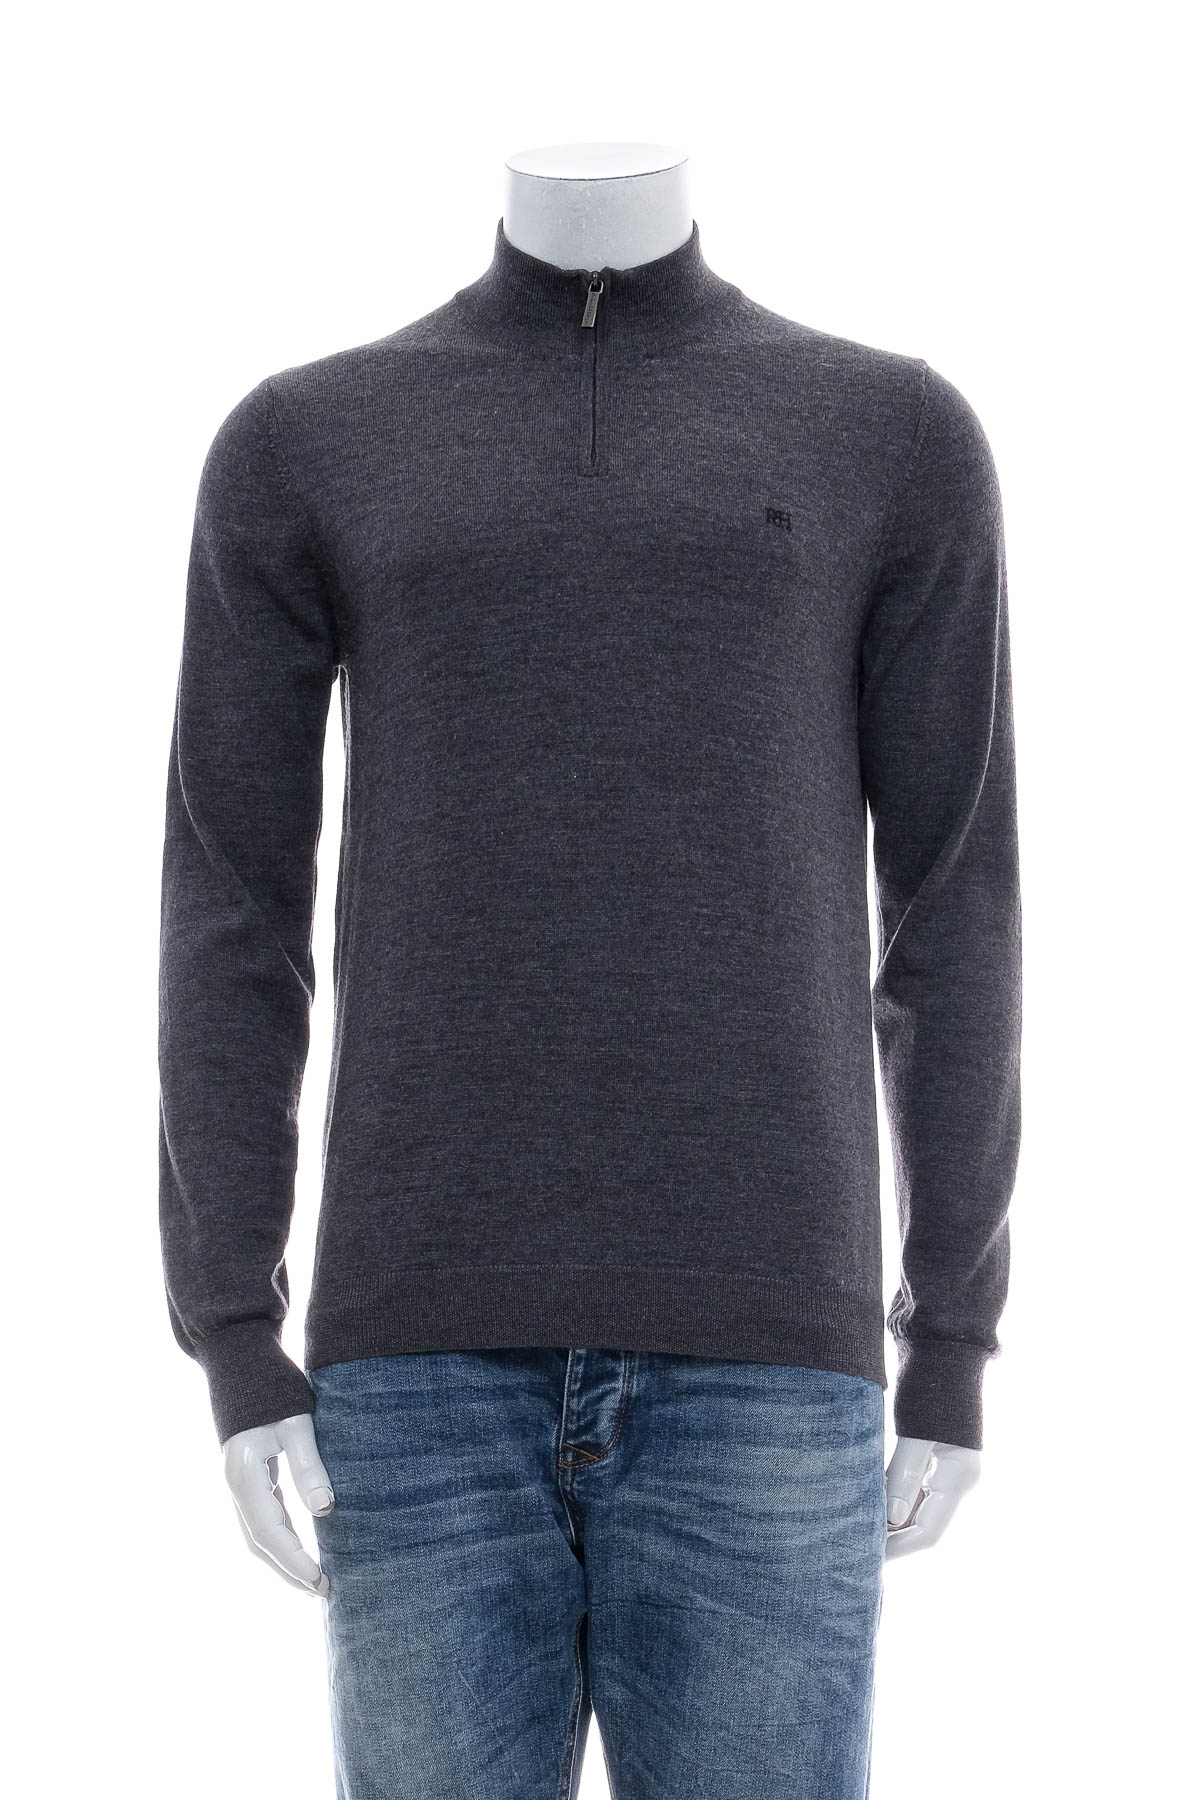 Men's sweater - Pedro del Hierro - 0